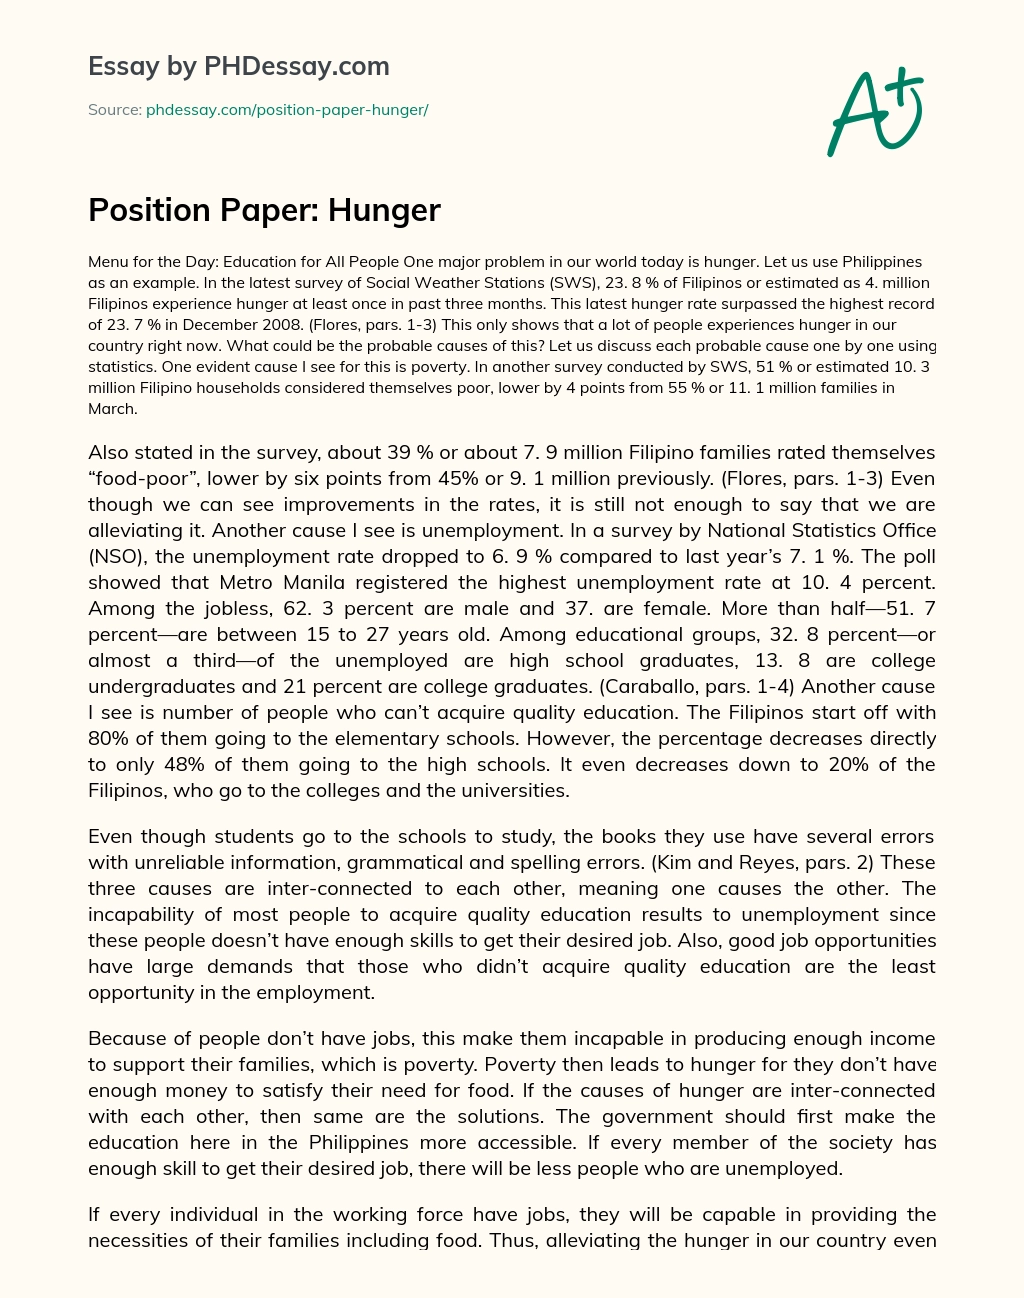 Position Paper Hunger Phdessay Com